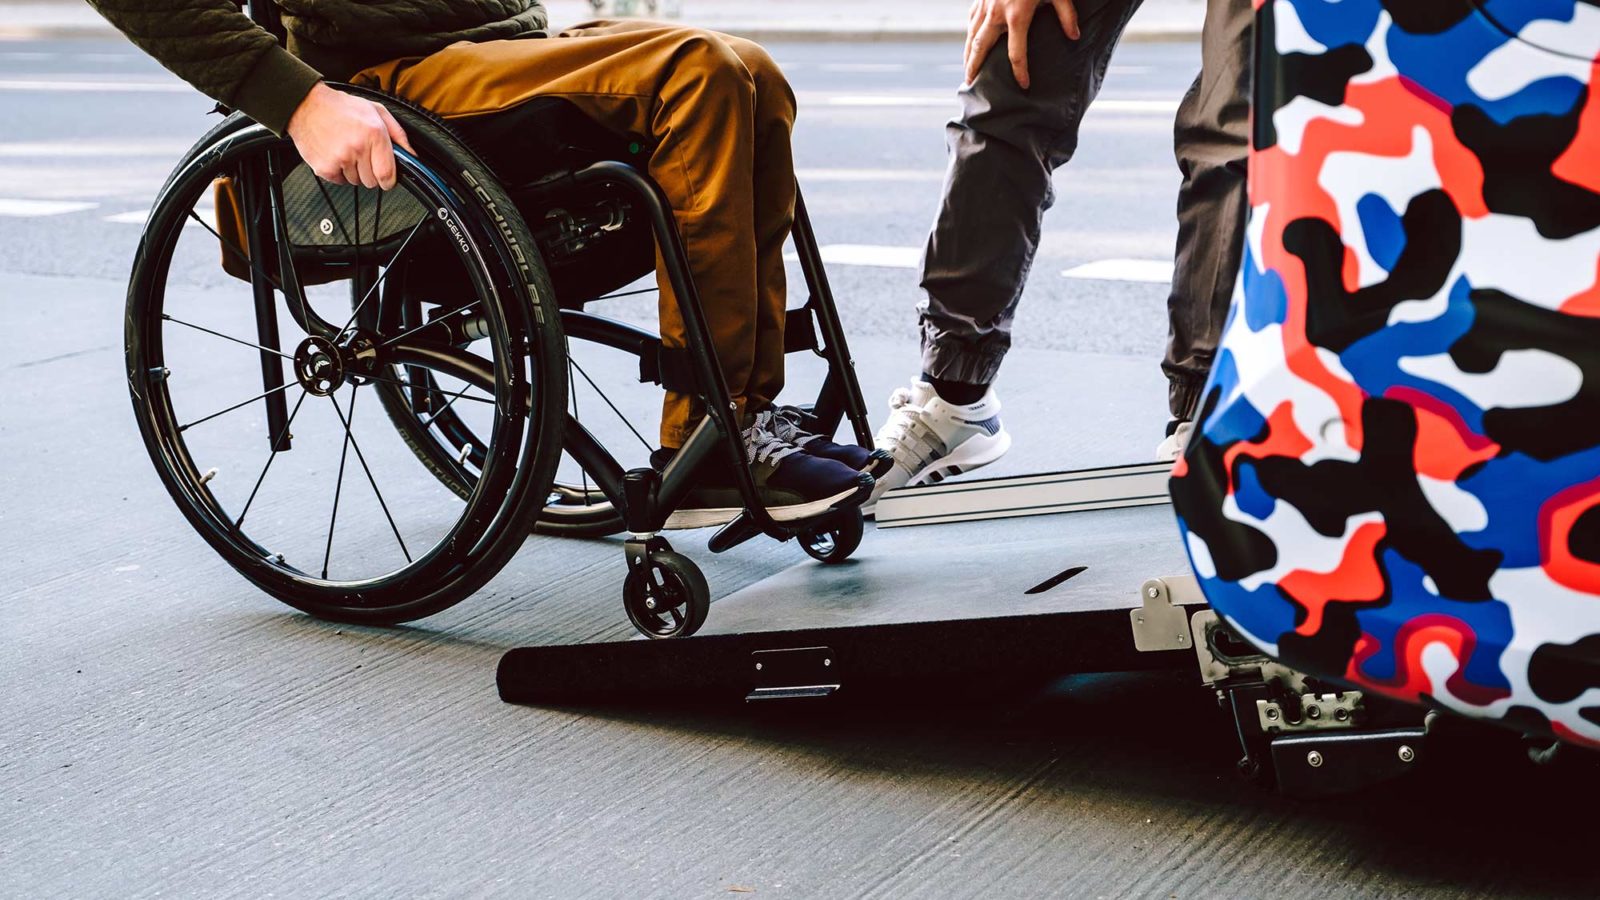 Rollifahrer beim Einfahren in ein Behindertenfahrzeug